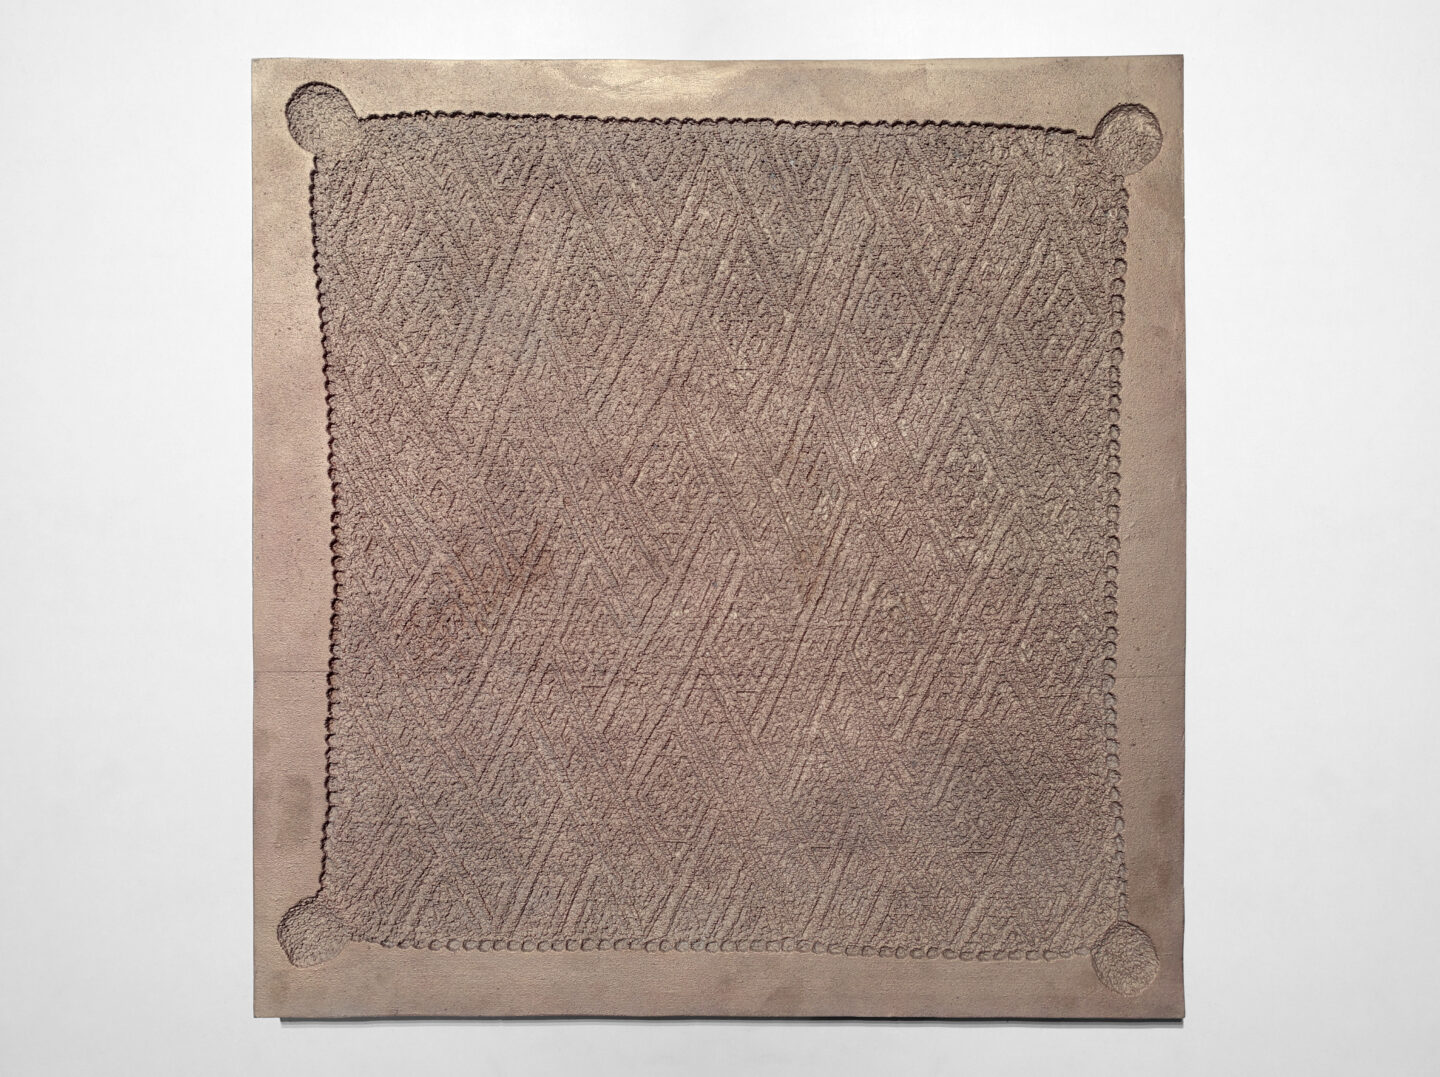 Negativo de um tecido de luxo congolês em cobre.